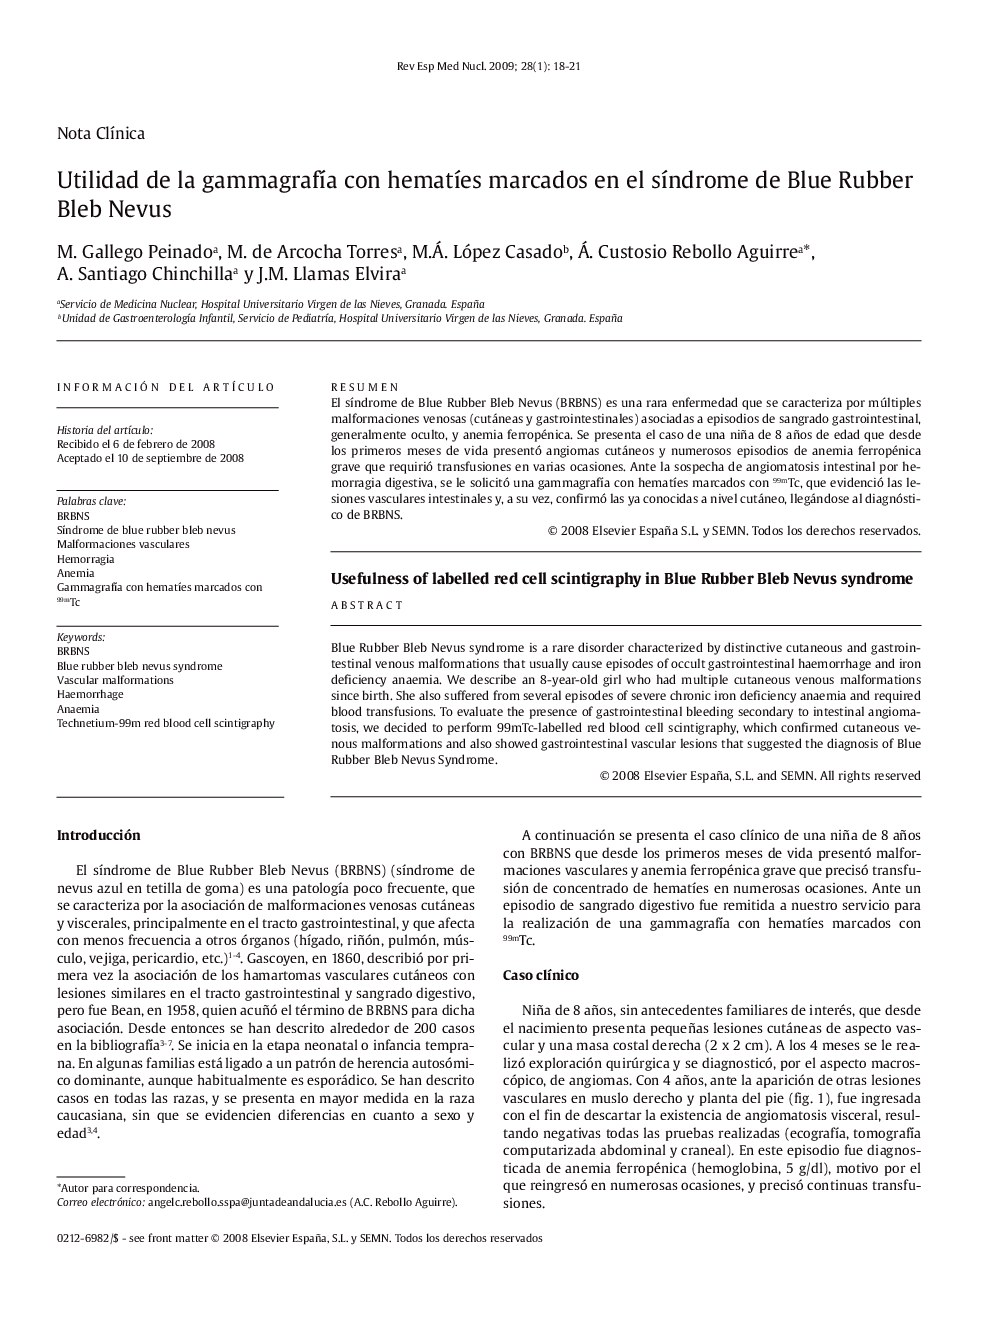 Utilidad de la gammagrafÃ­a con hematÃ­es marcados en el sÃ­ndrome de Blue Rubber Bleb Nevus